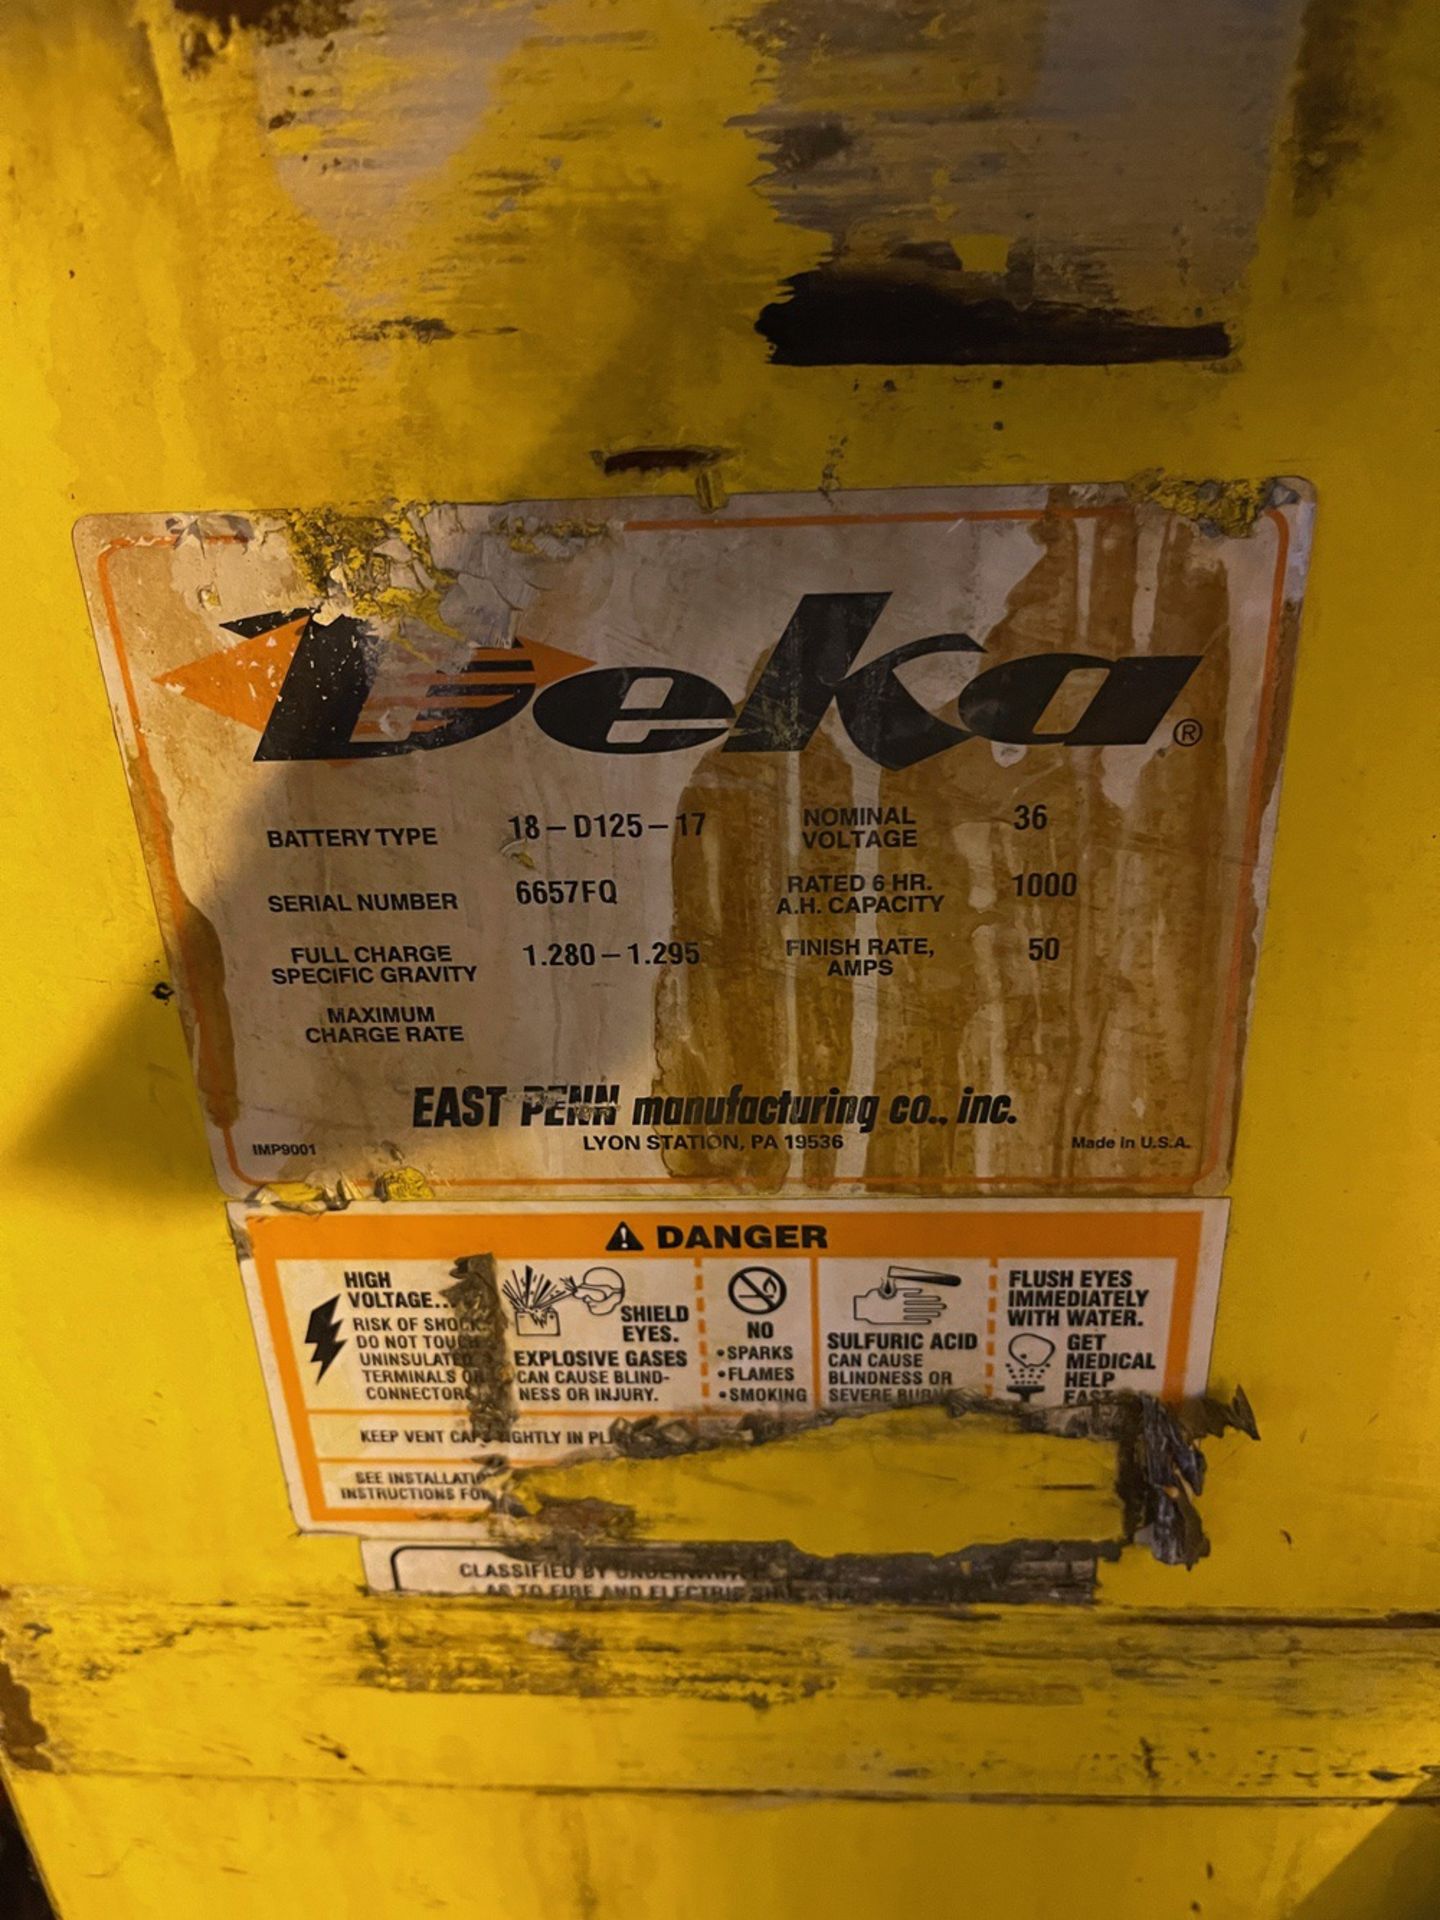 Deka 36V Fork Lift Battery, Model 18-D125-17, S/N 6657FQ | Rig Fee $50 - Image 2 of 2